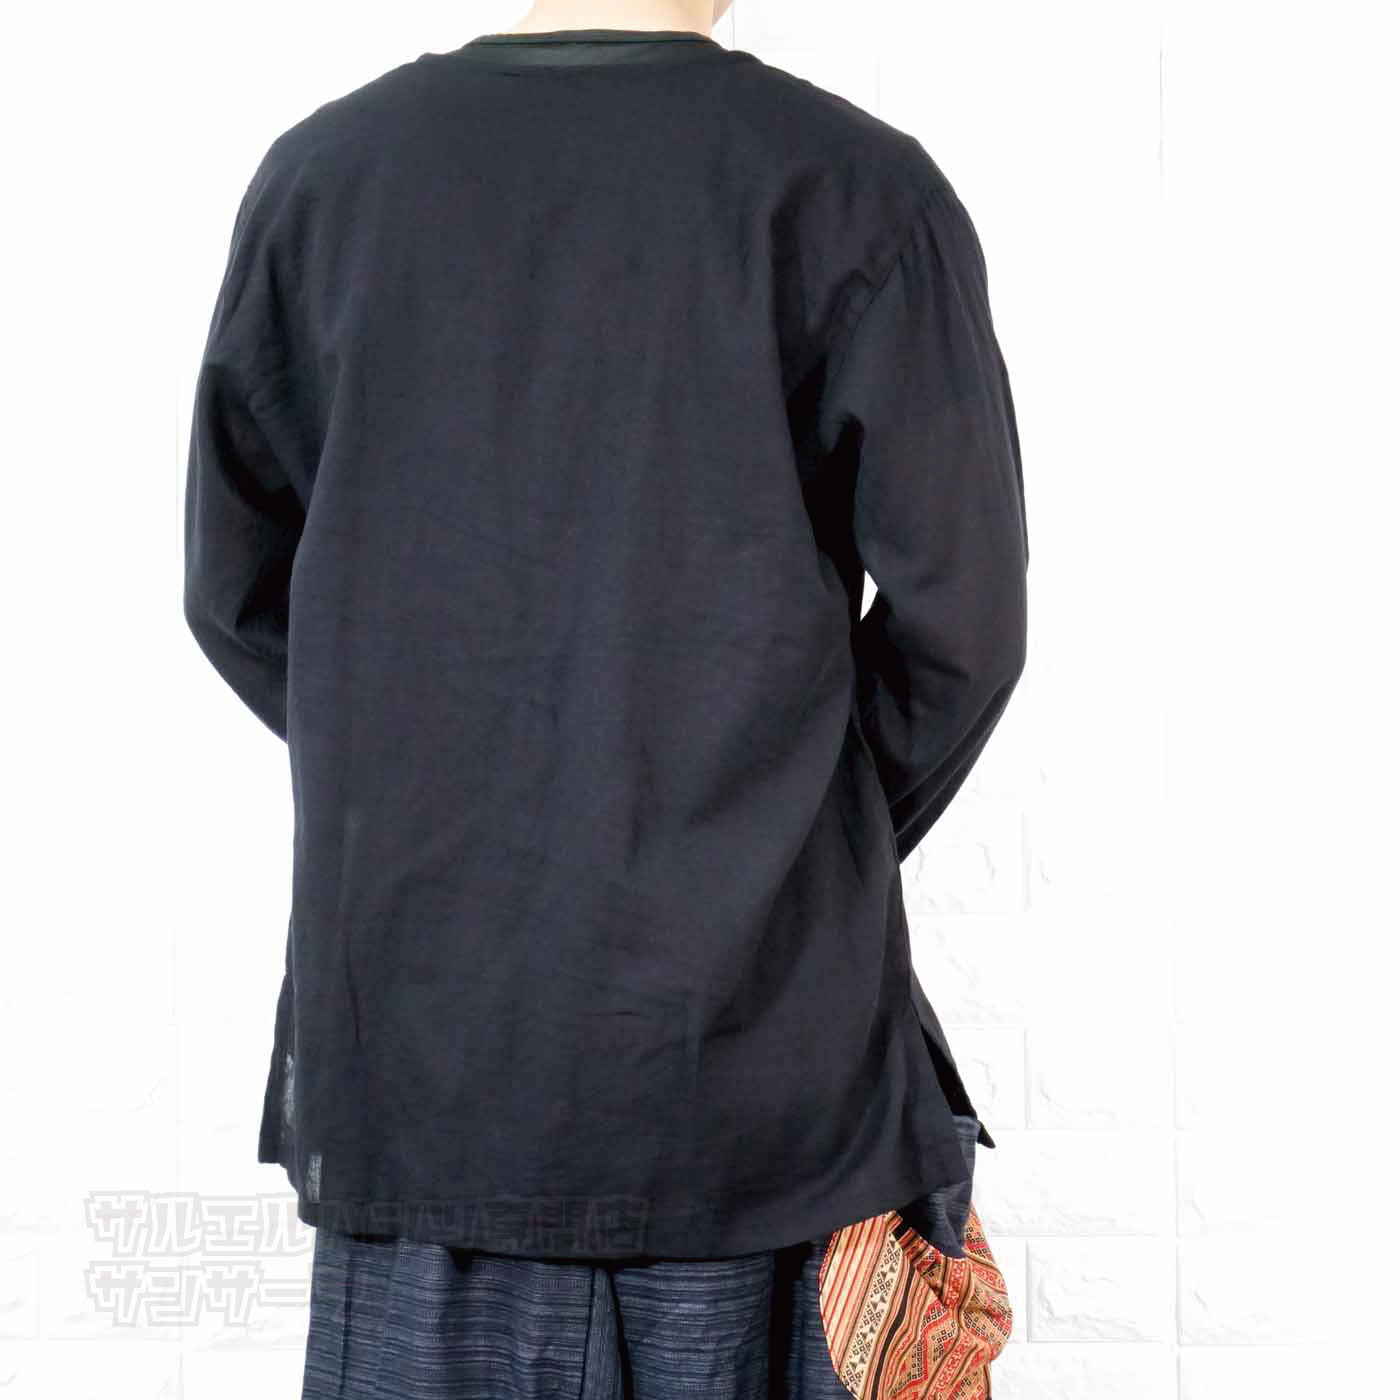 エスニック Tシャツ 長袖 クルタシャツ トップス メンズ レディース ユニセックス ヒンディー ヒンドゥー 大きめサイズ ゆったり アジアン ファッションブラック